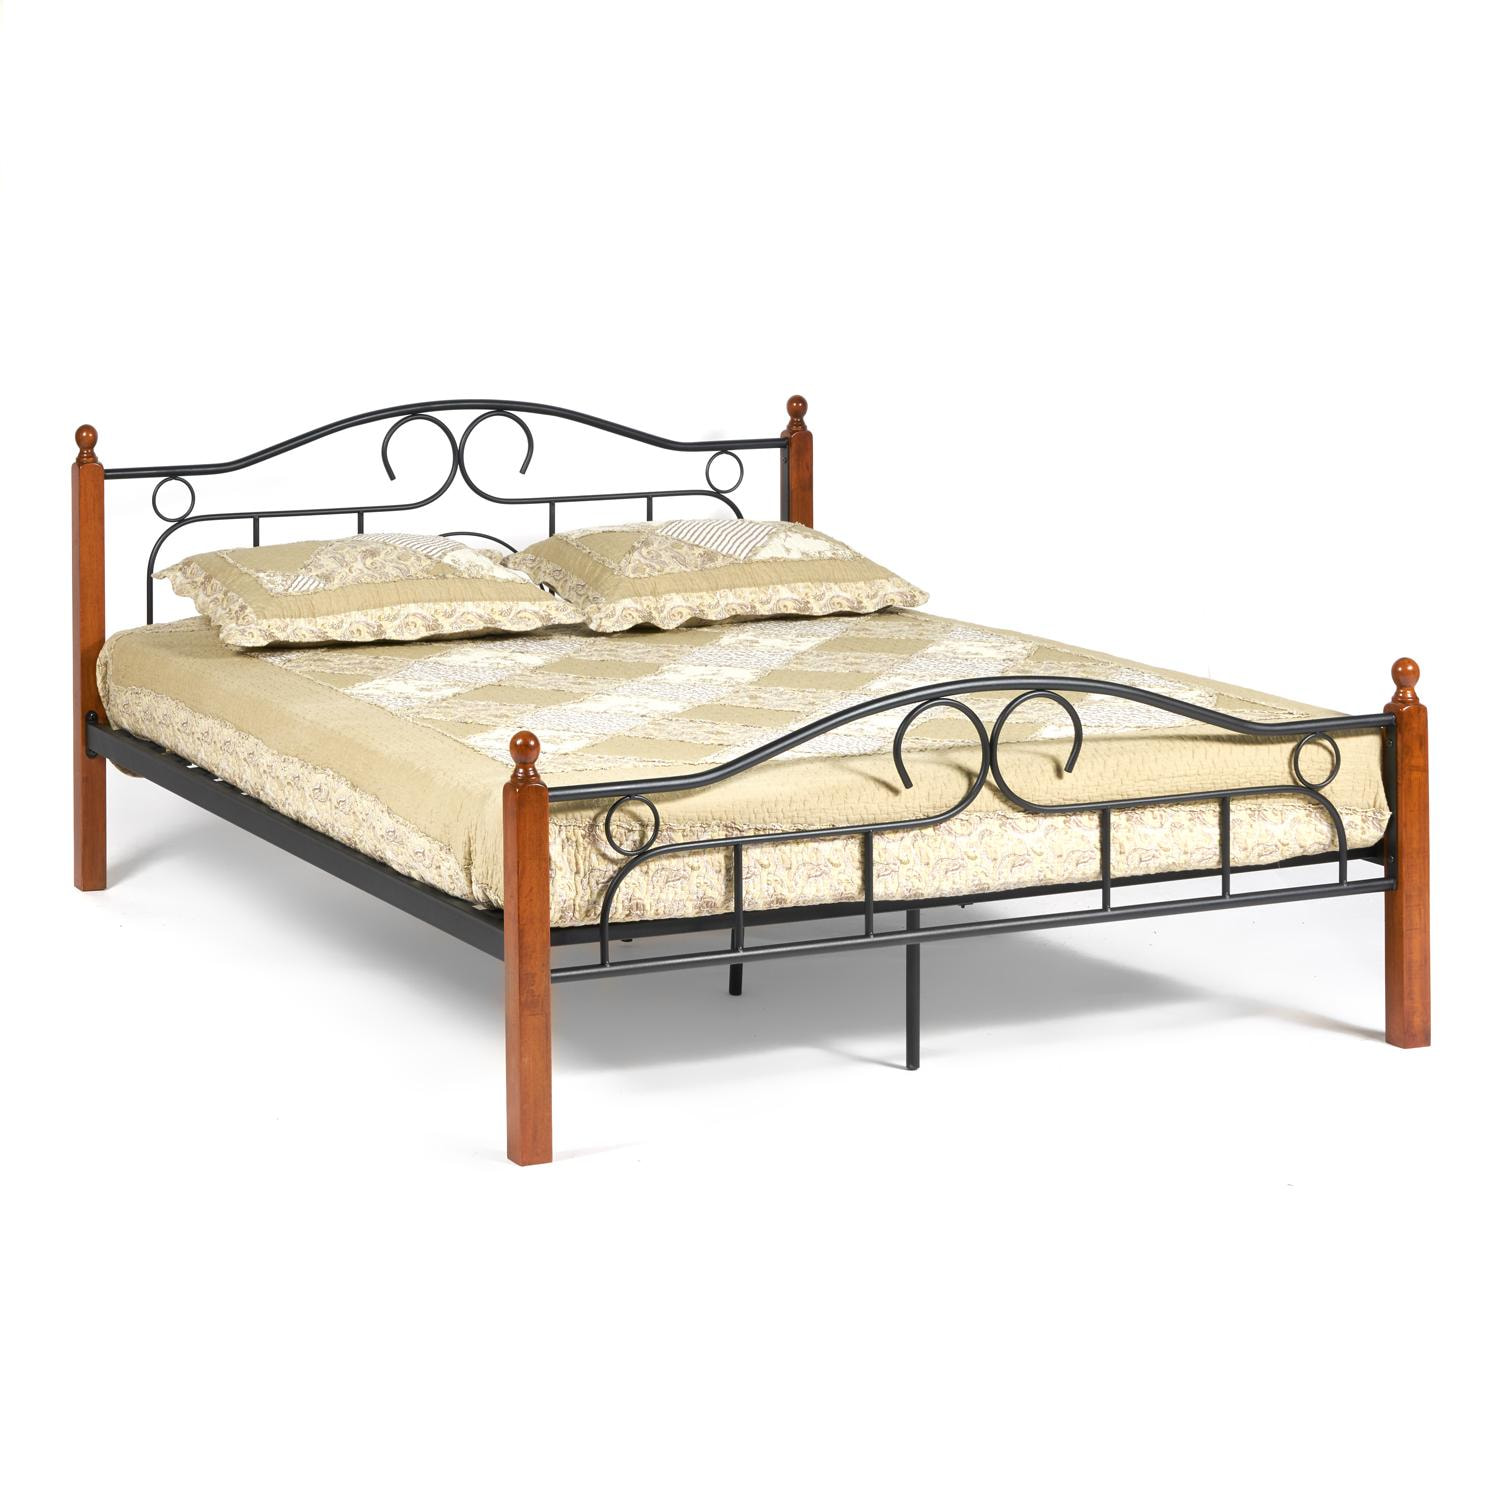 Кровать AT-808 Wood slat base дерево гевея/металл, 180*200 см (King bed), красный дуб/черный